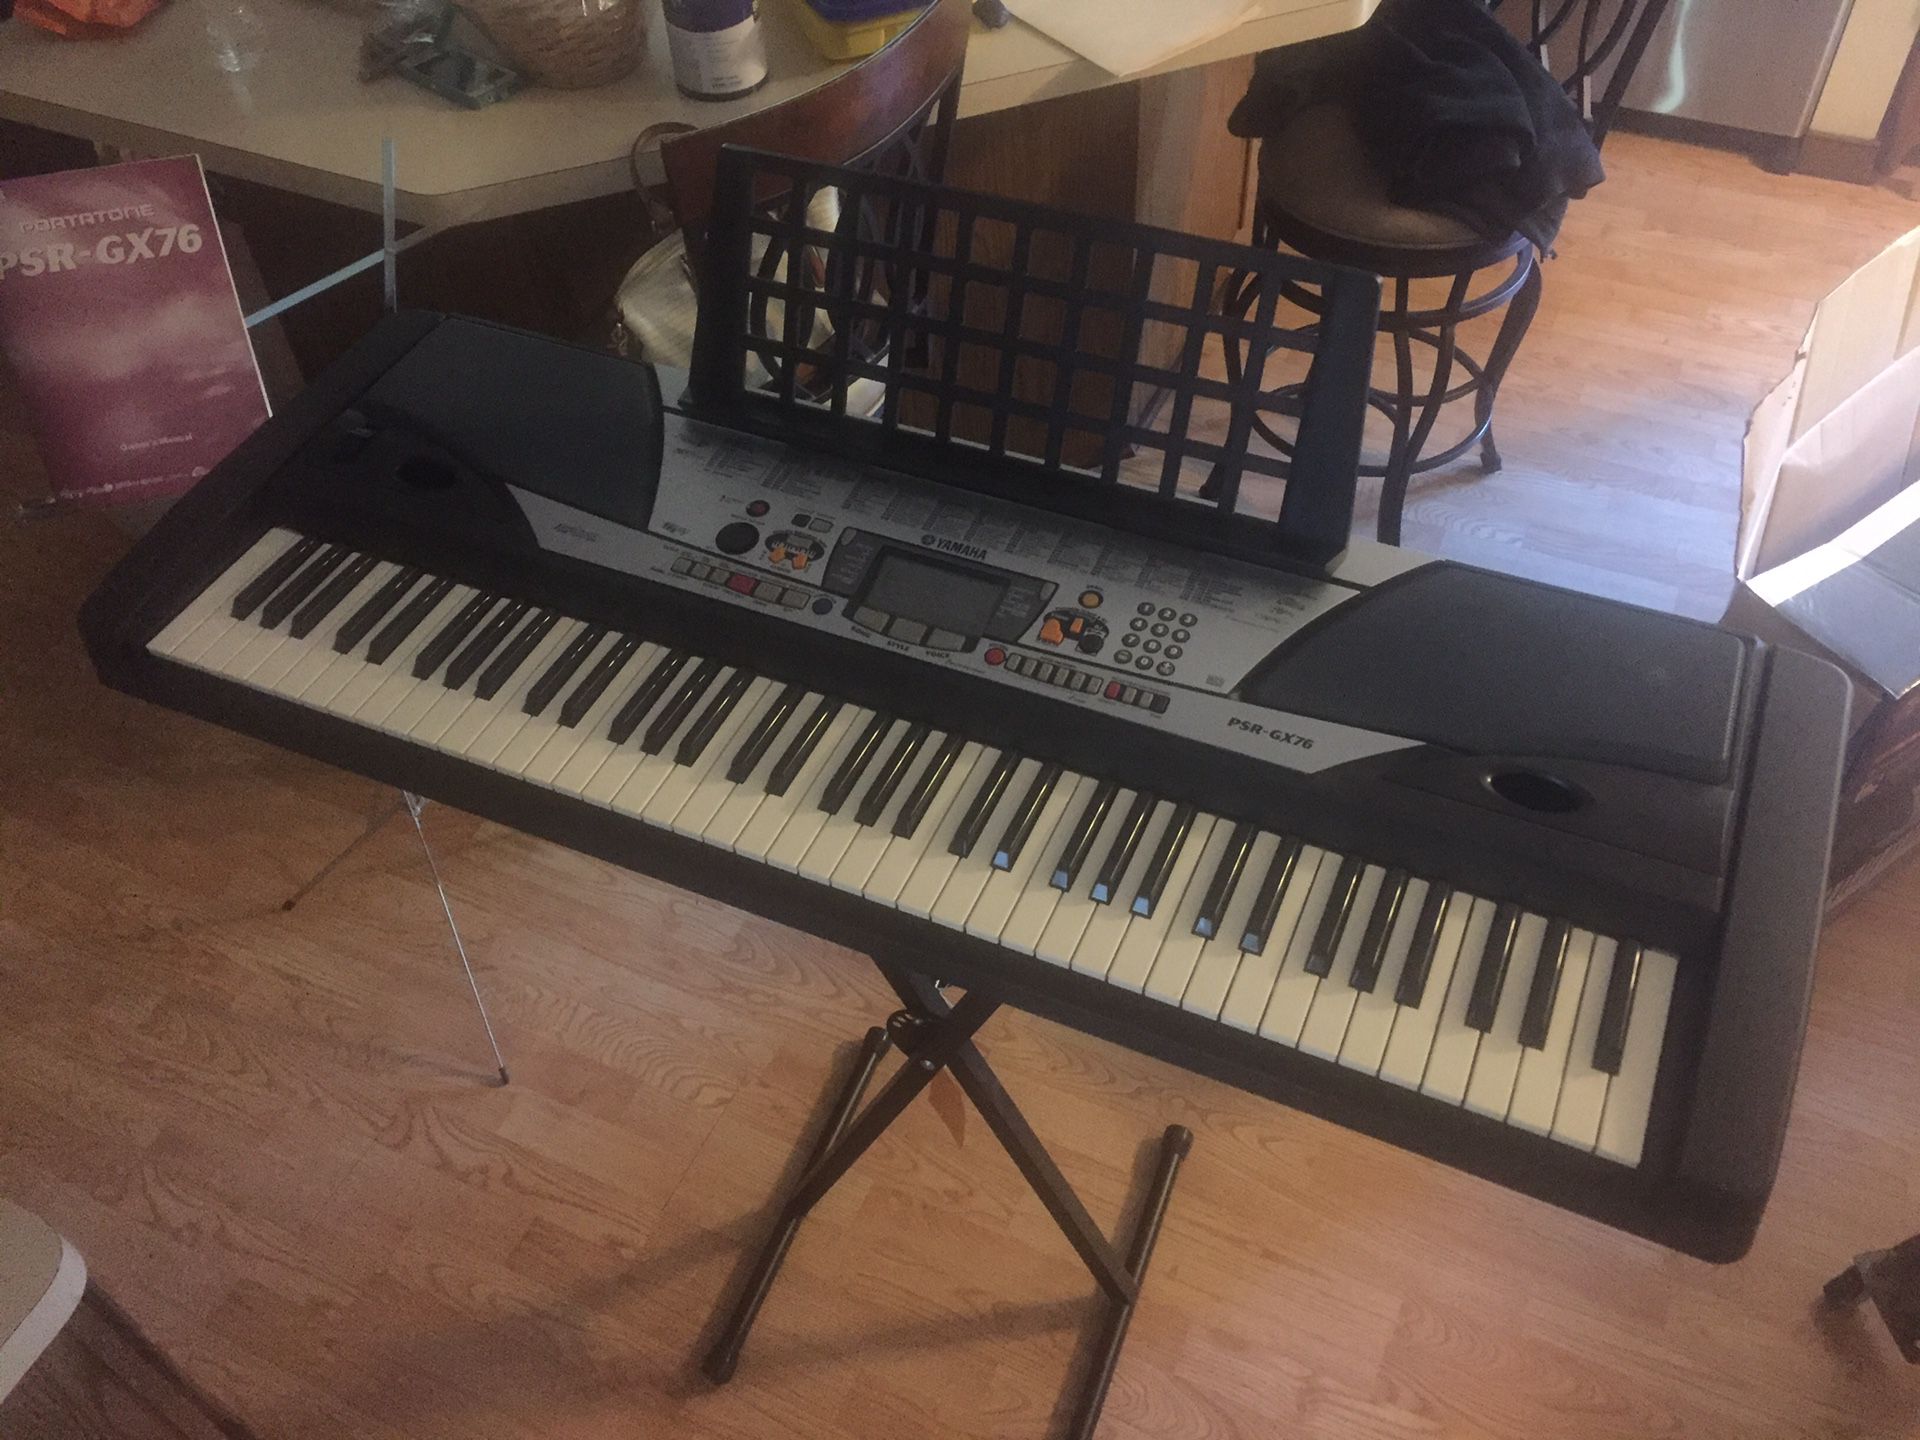 Yamaha Electric Keyboard - PSR-GX76